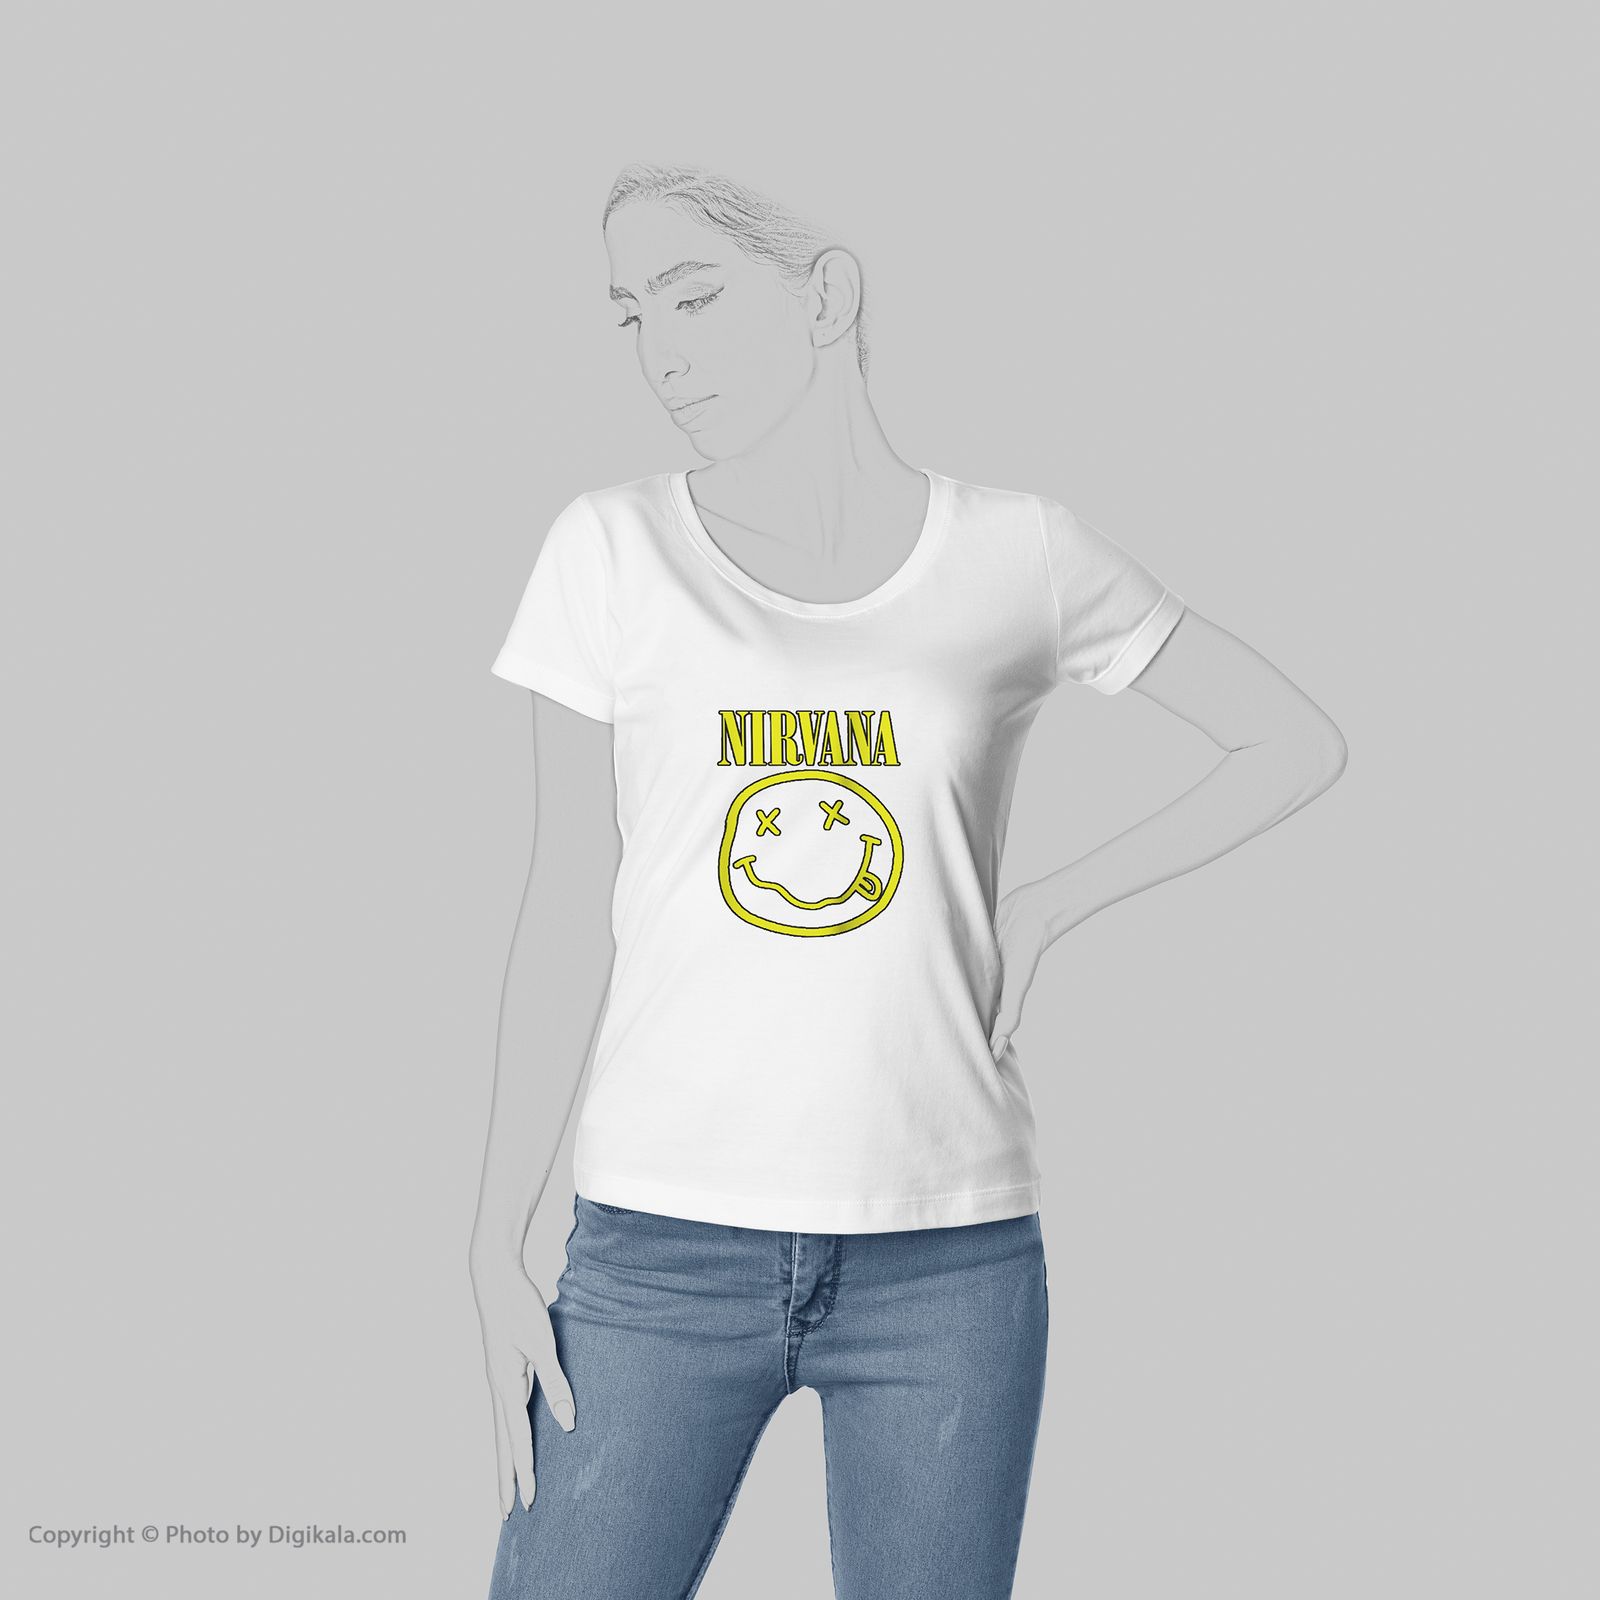 تی شرت زنانه به رسم طرح نیروانا کد 5542 -  - 6